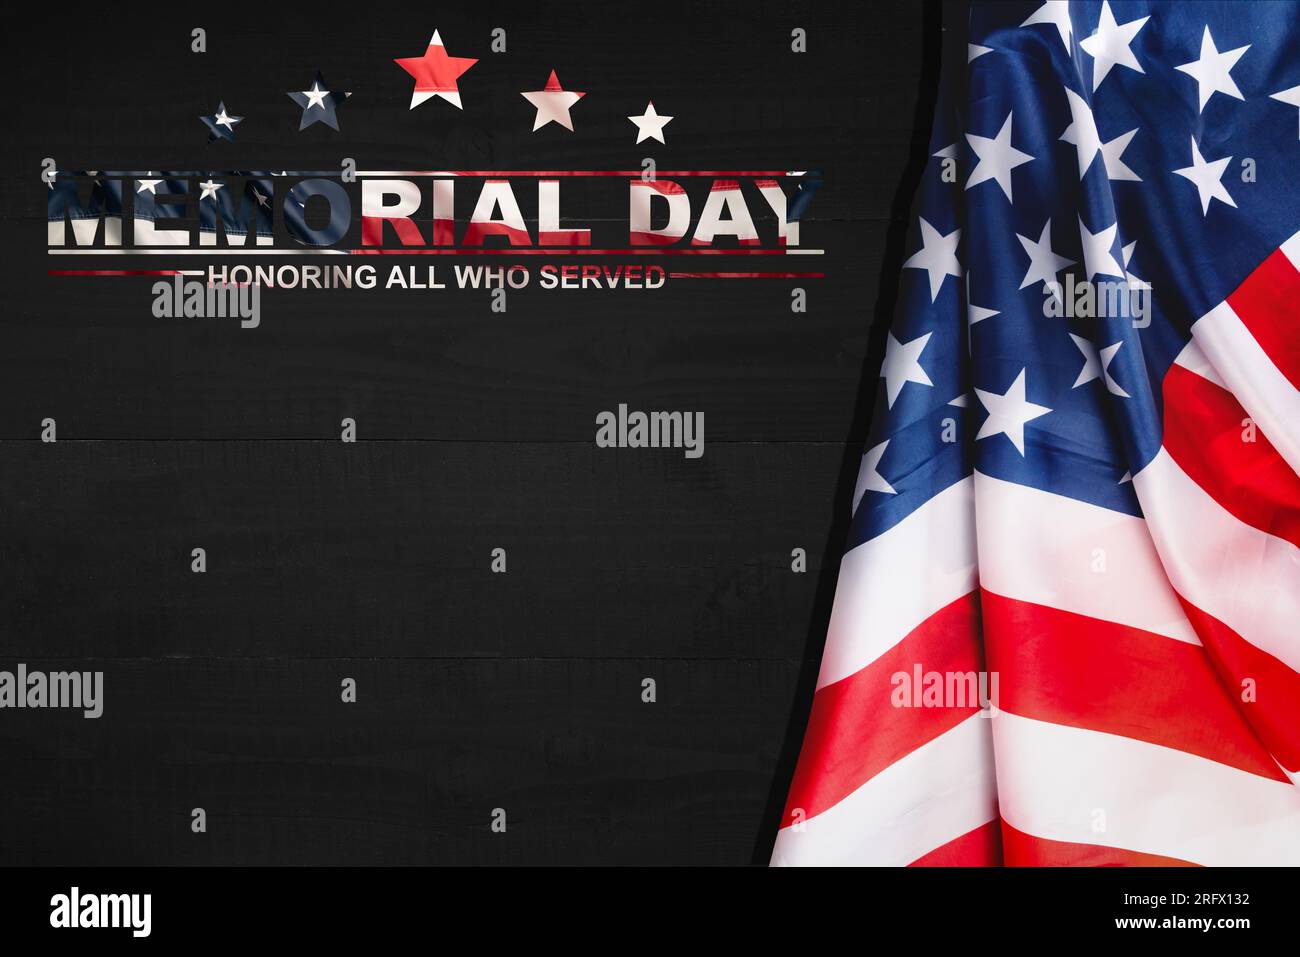 Text Memorial Day auf dem Hintergrund der amerikanischen Flagge. Ehre und Erinnerung. Militärveteran. Stockfoto